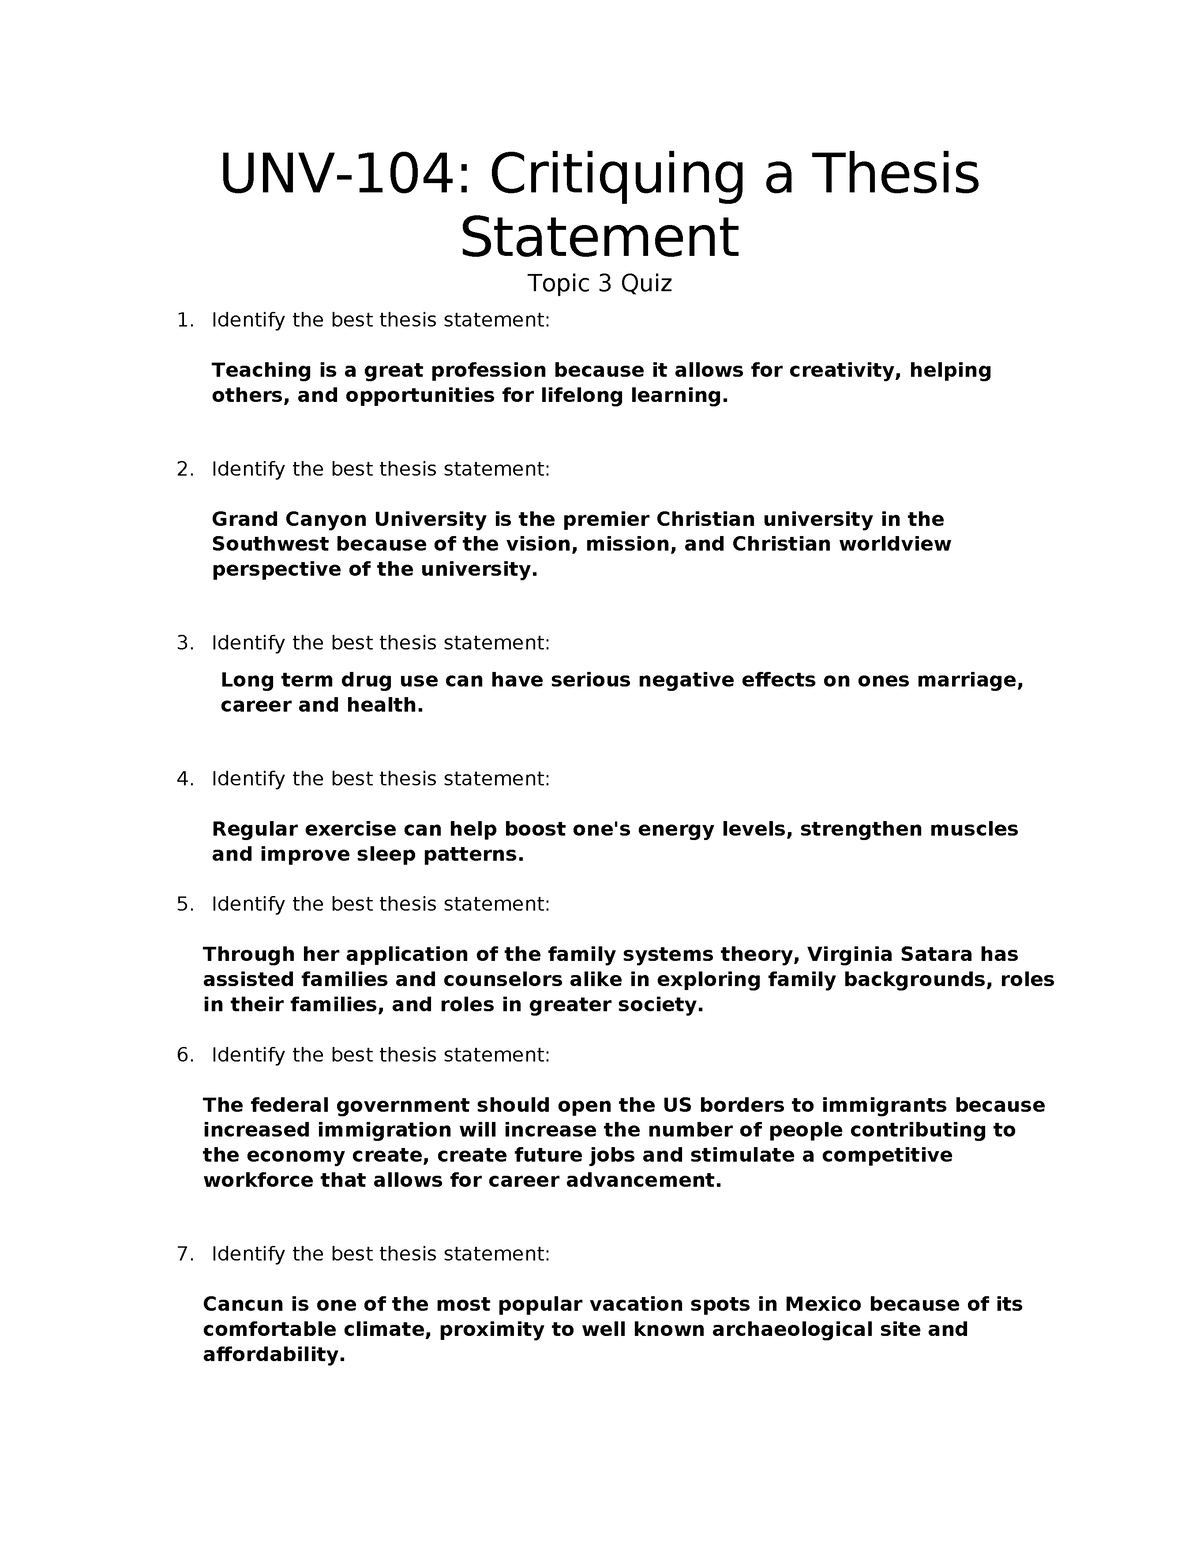 T3 QUIZ Critiquing Thesis Statements - UNV-104: Critiquing a Thesis ...